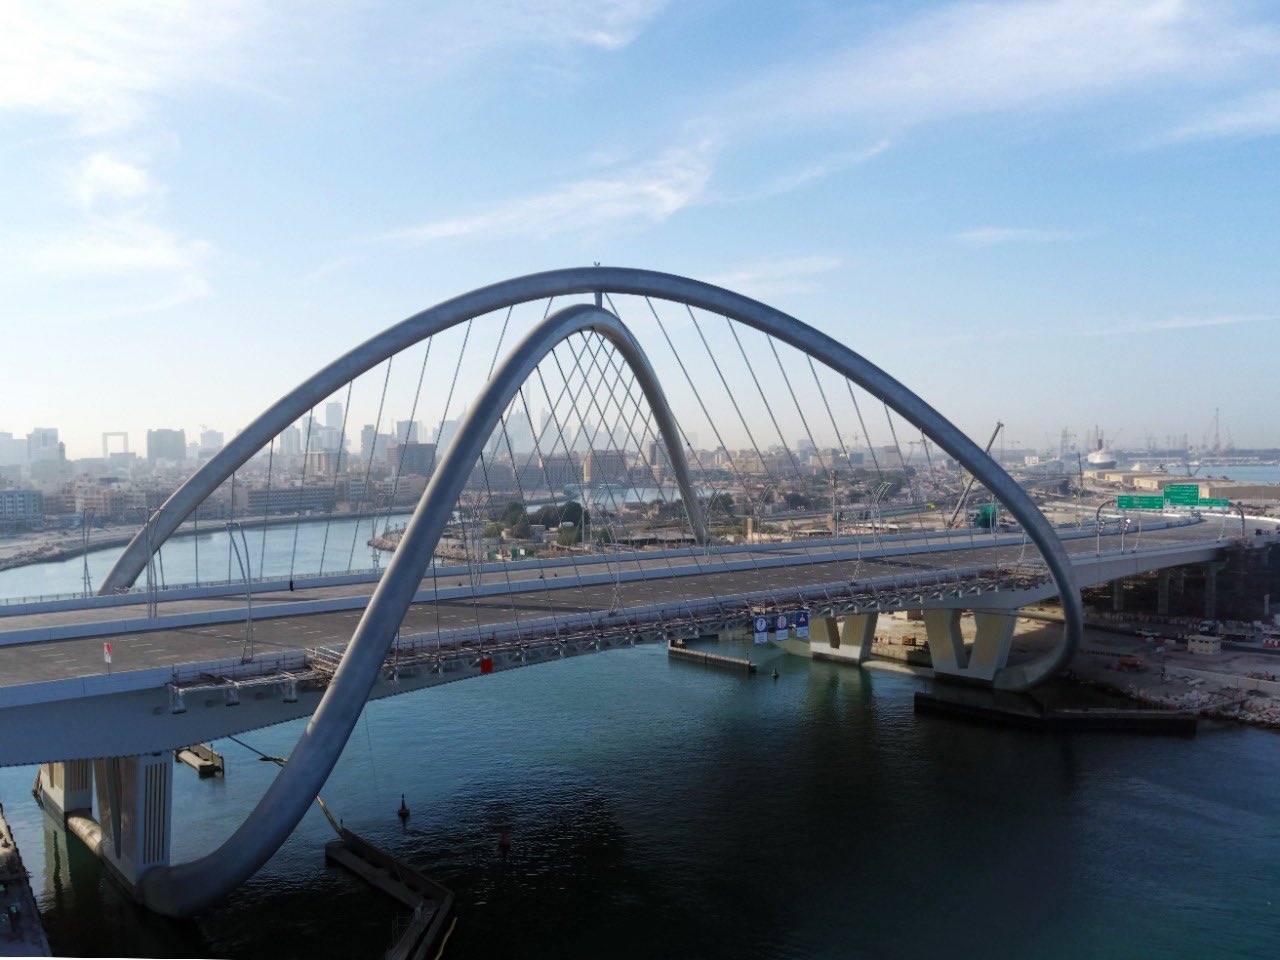 محمد بن راشد يطلق "جسر إنفينيتي" تحفة معمارية عالمية